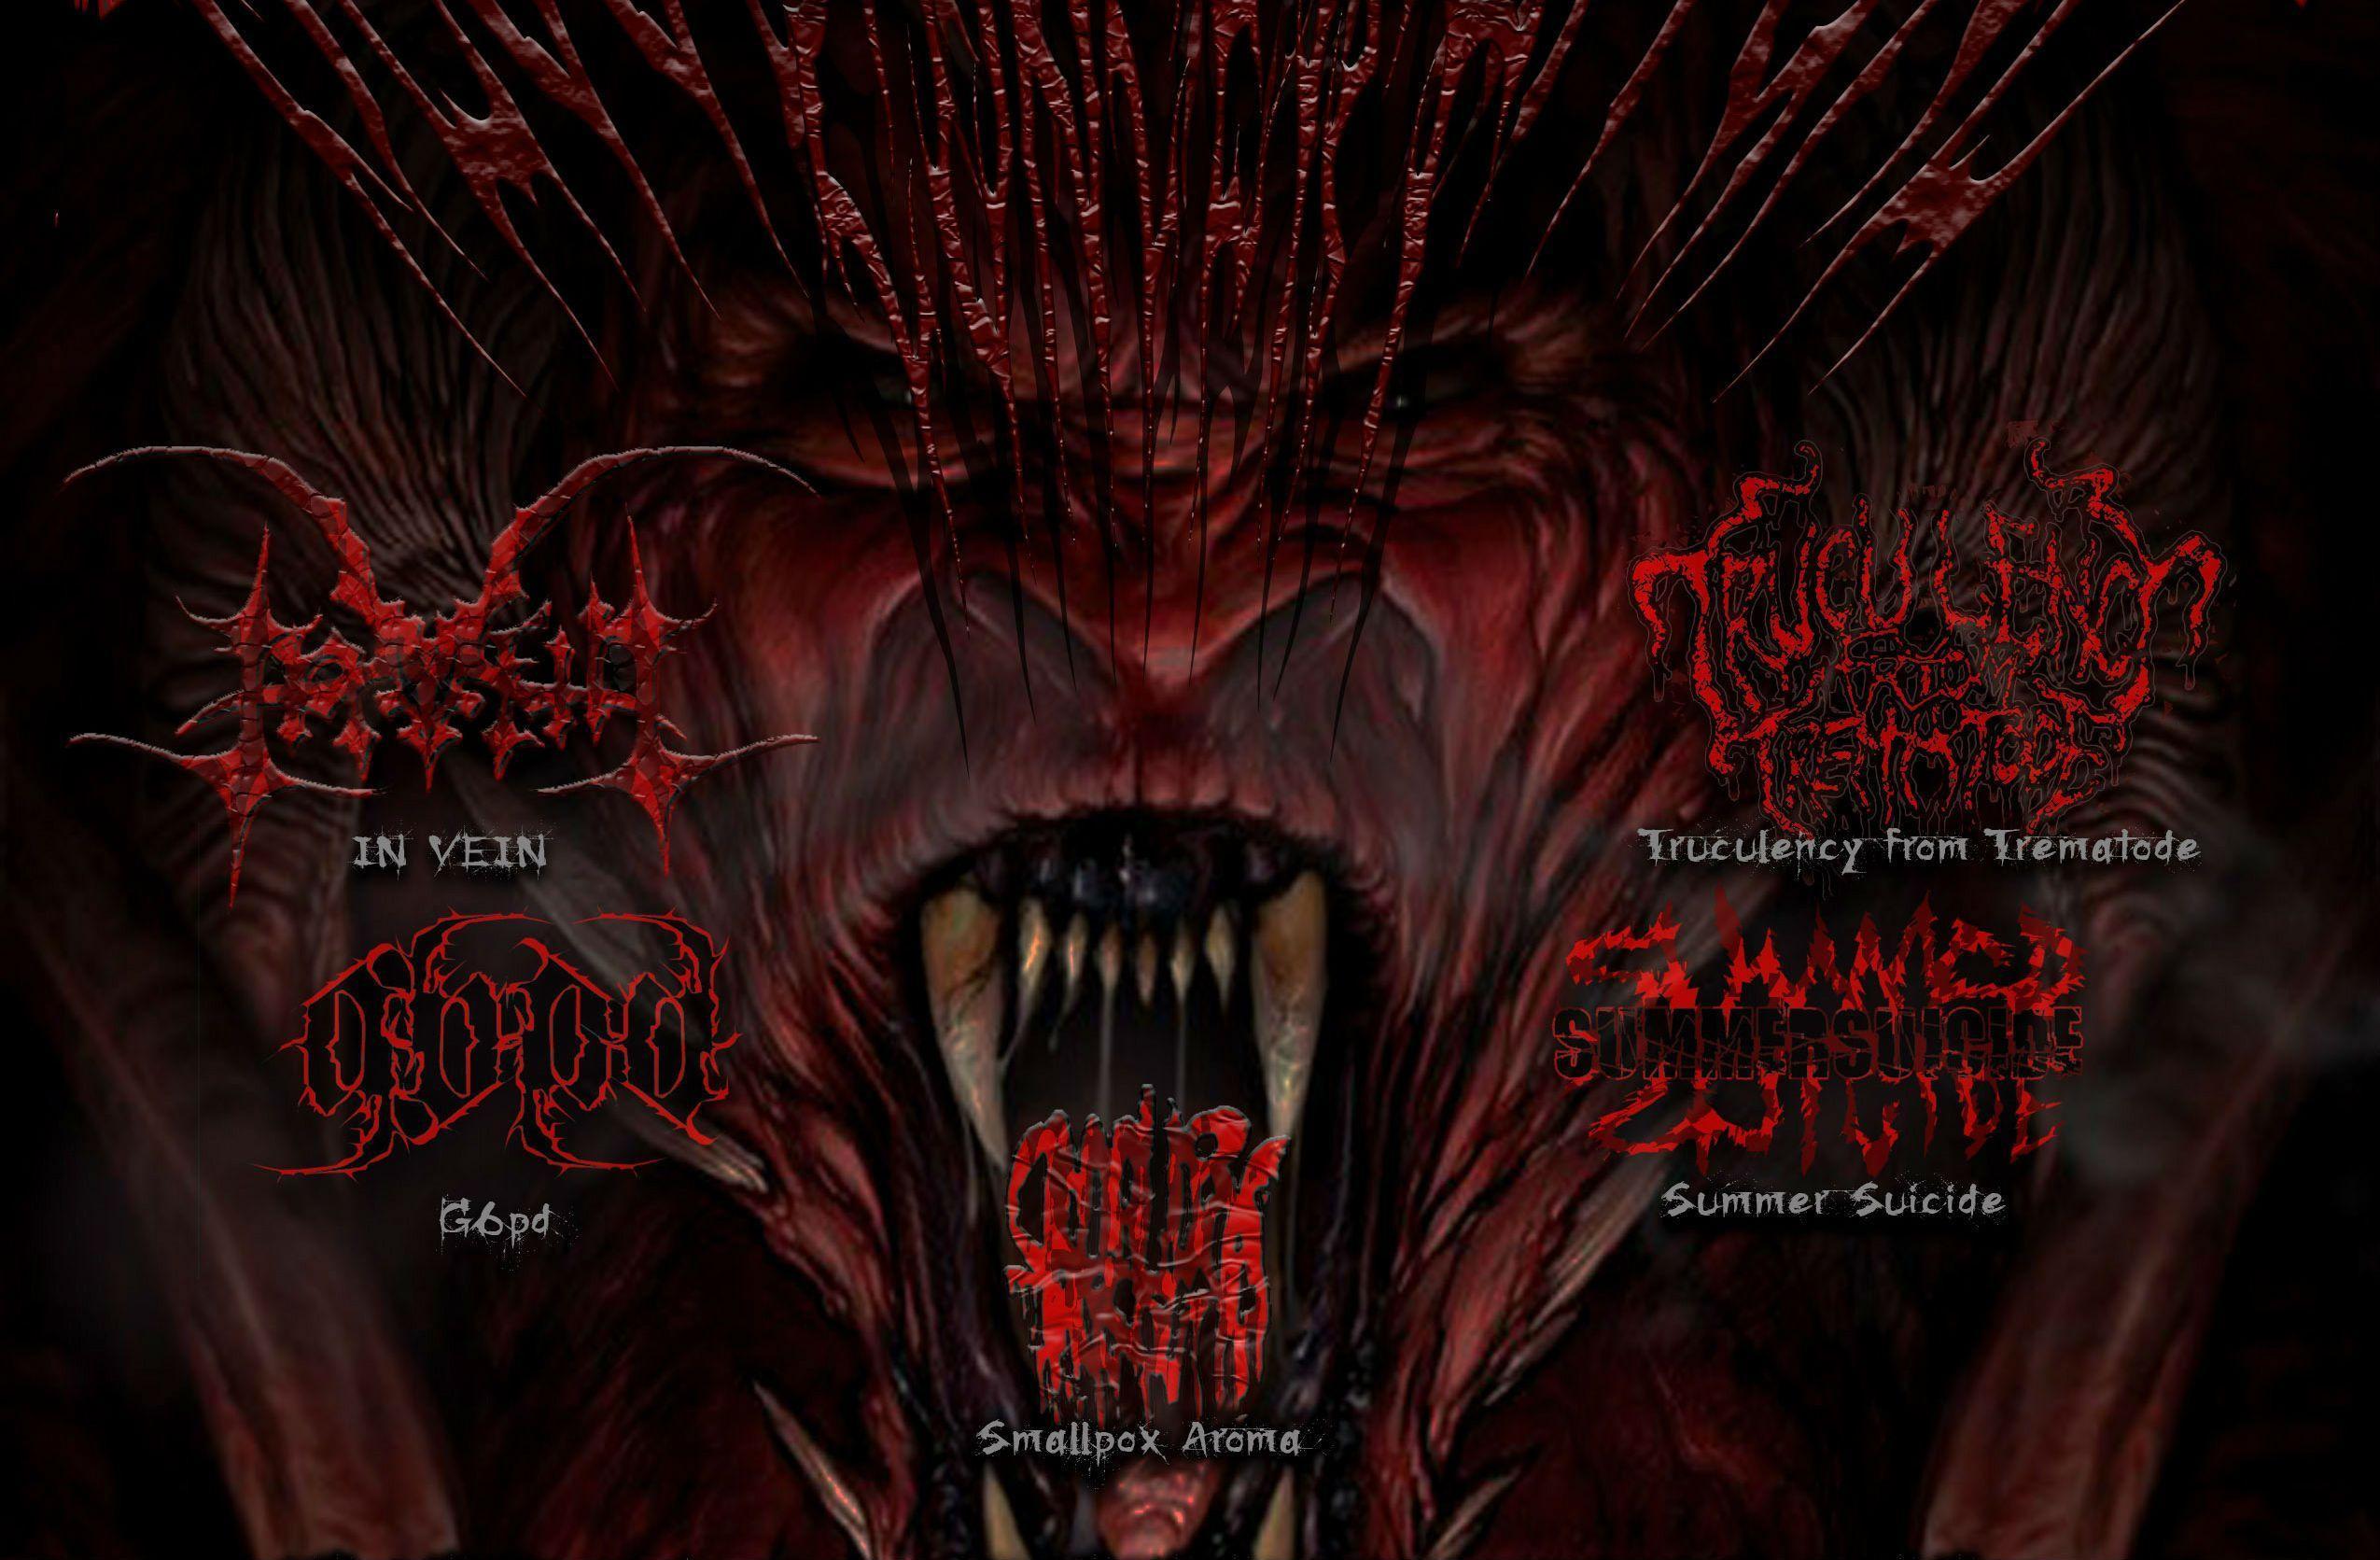 BLOODBATH death metal heavy hq wallpaperx1671